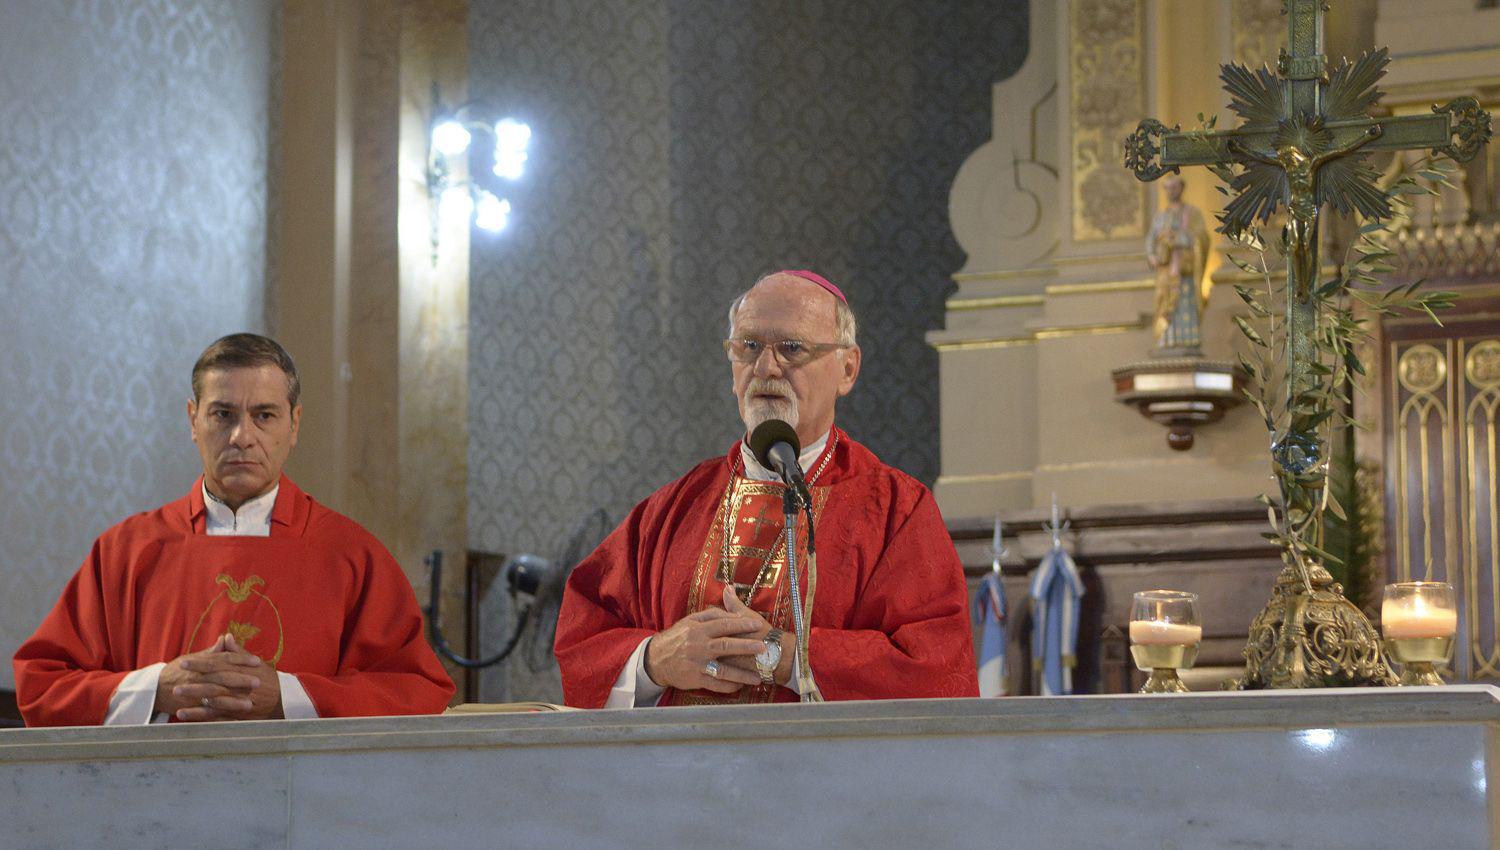 Los obispos santiagueños pidieron a los fieles mantener la
pr�ctica de la oración en familia y cuidarse